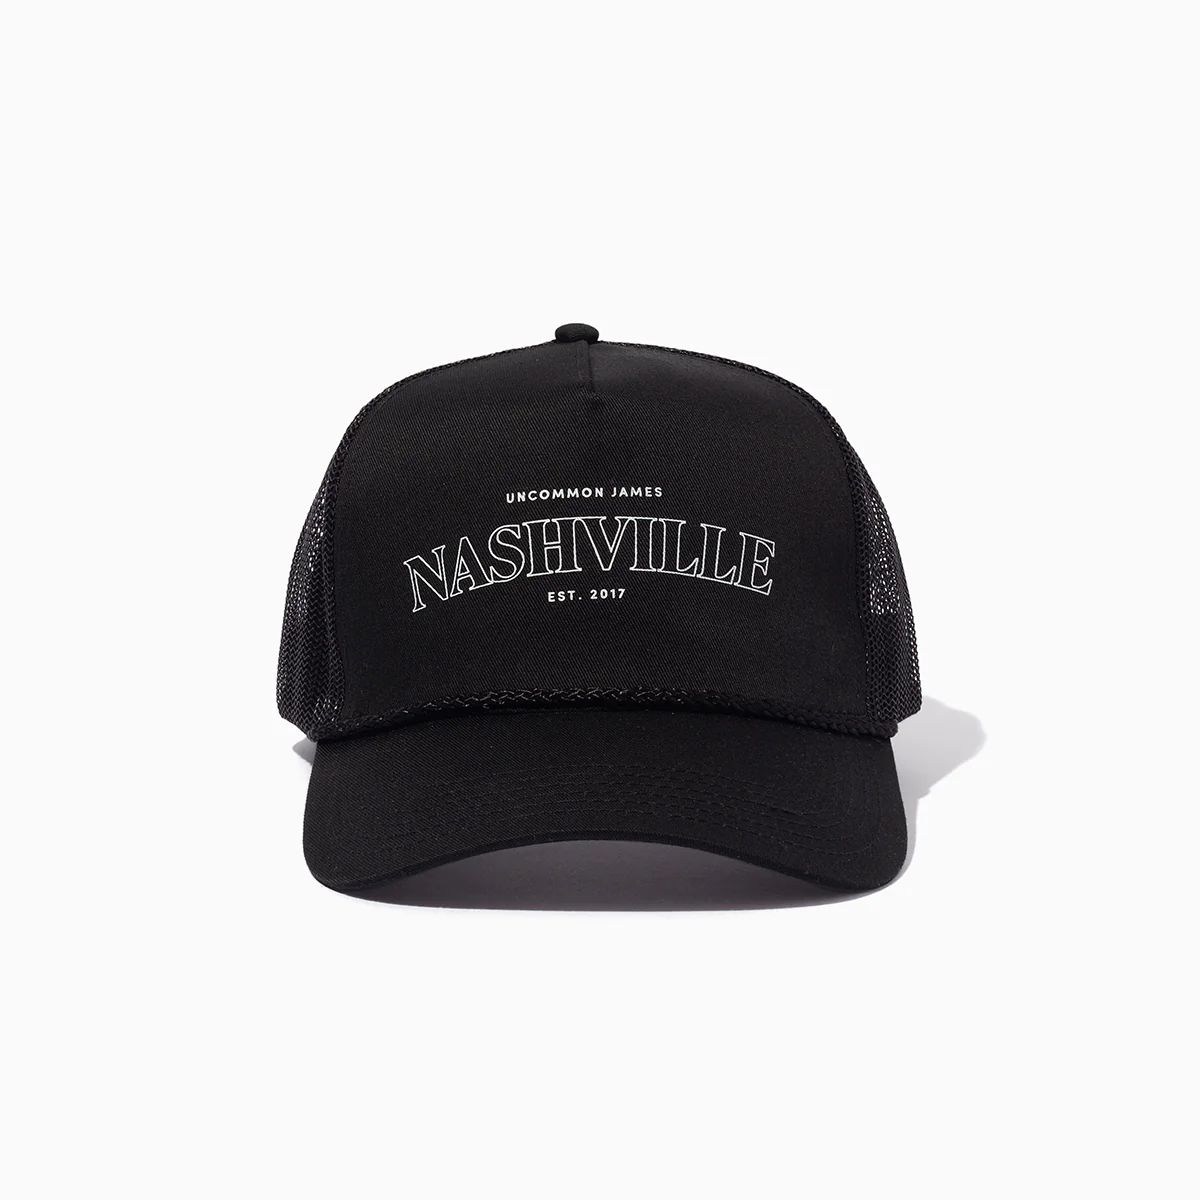 Nashville Trucker Hat in Black and Beige | Uncommon James | Uncommon James